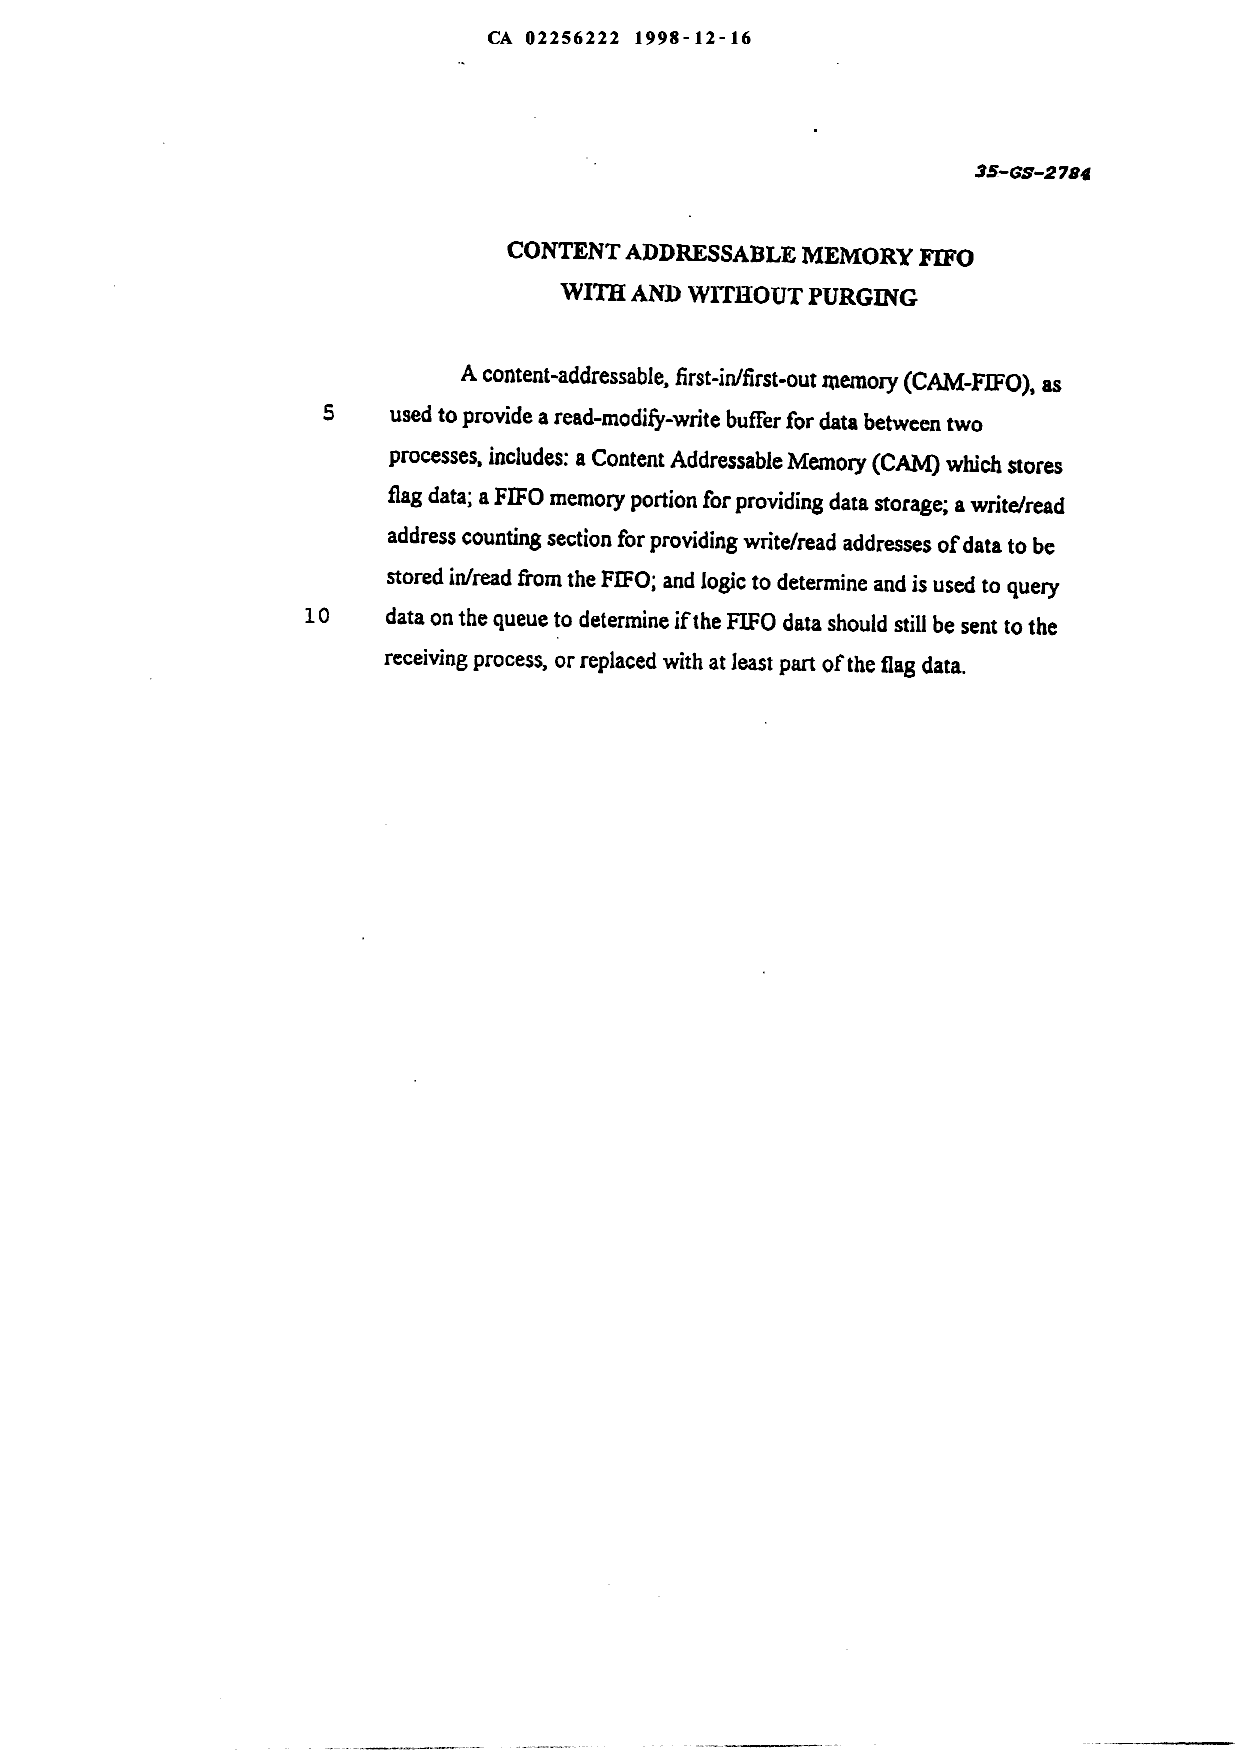 Document de brevet canadien 2256222. Abrégé 19981216. Image 1 de 1